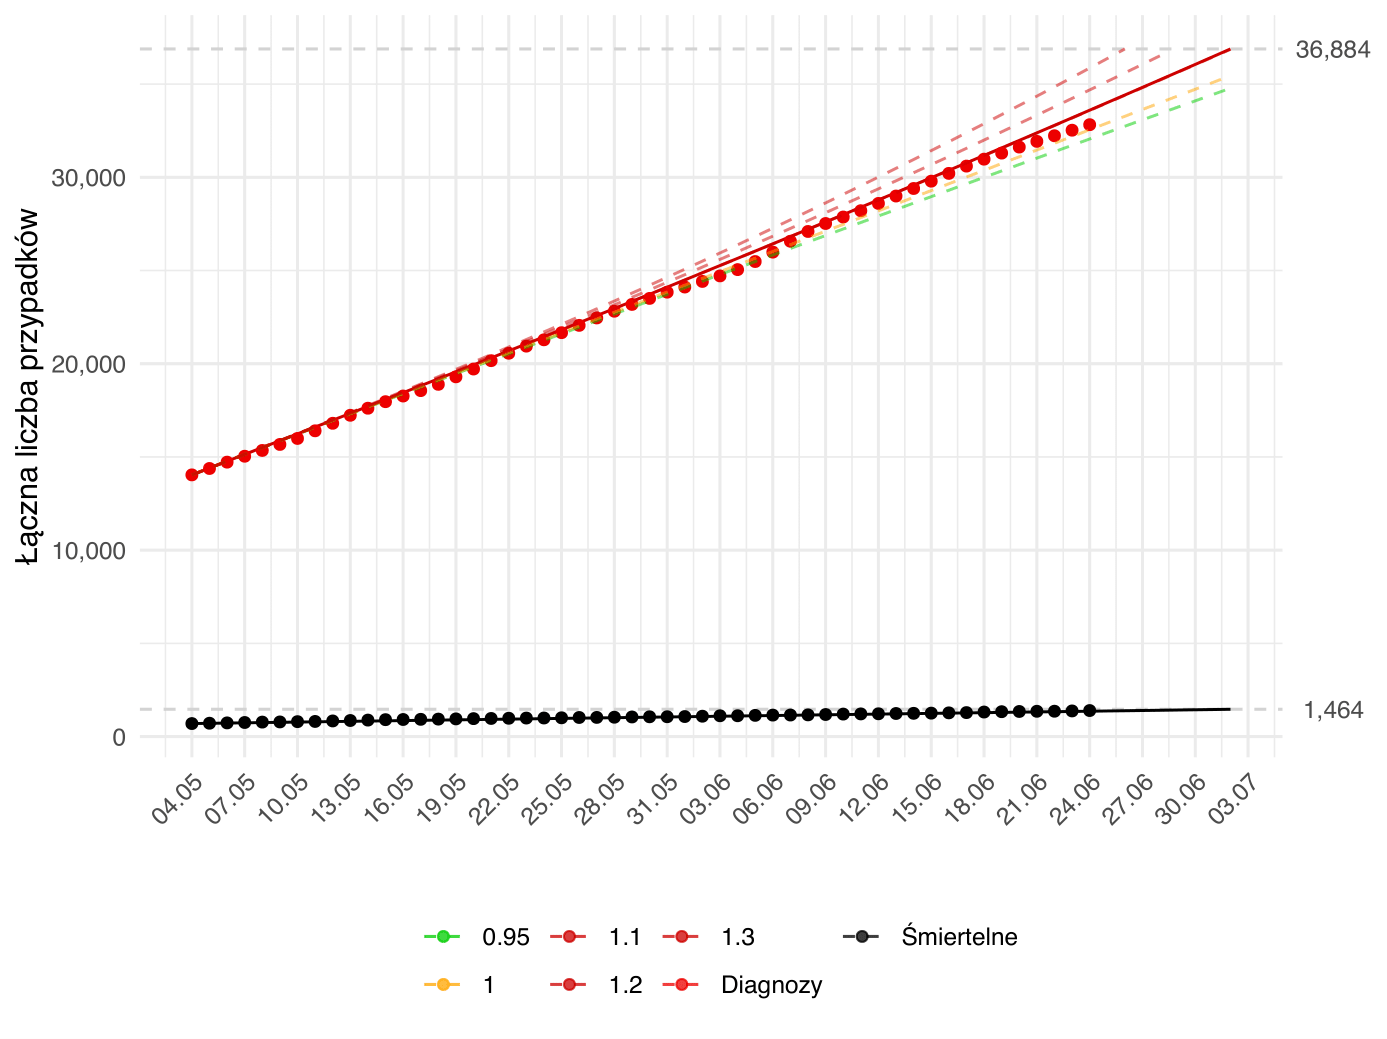 Prognoza krótkoterminowa liczby osób diagnozowanych i zgonów. Aktualna prognoza (linia ciągła) oparta na modelu dopasowanym zarówno względem parametru  β - związanego z redukcją kontaktów społecznych, jak i γ<sup>-1</sup> - związanego z efektywnością strategii testowania. Kolorem czerwonym oznaczona jest łączna liczba rozpoznań aż do danego dnia, zielonym - łączna liczba wyzdrowień, a czarnym - zgonów. Kropki oznaczają obserwowane dane odpowiedniej kategorii. Dodatkowo, przerywane linie przedstawiają alternatywne prognozy zależne od poziomu parametru <i>R<sub>0</sub></i>, przy parametrze γ<sup>-1</sup> (interpretowanym jako długość okresu zakaźności) ustalonym na wartość estymowaną w oparciu o dane do dnia przygotowania raportu. Kolor przerywanych linii odpowiada intensywności epidemii zgodnej z wartością parametru <i>R<sub>0</sub></i> (zielona - podkrytyczna, żółta - stan endemiczny, czerwona - nadkrytyczna). Model został dopasowany do danych od 04.05.